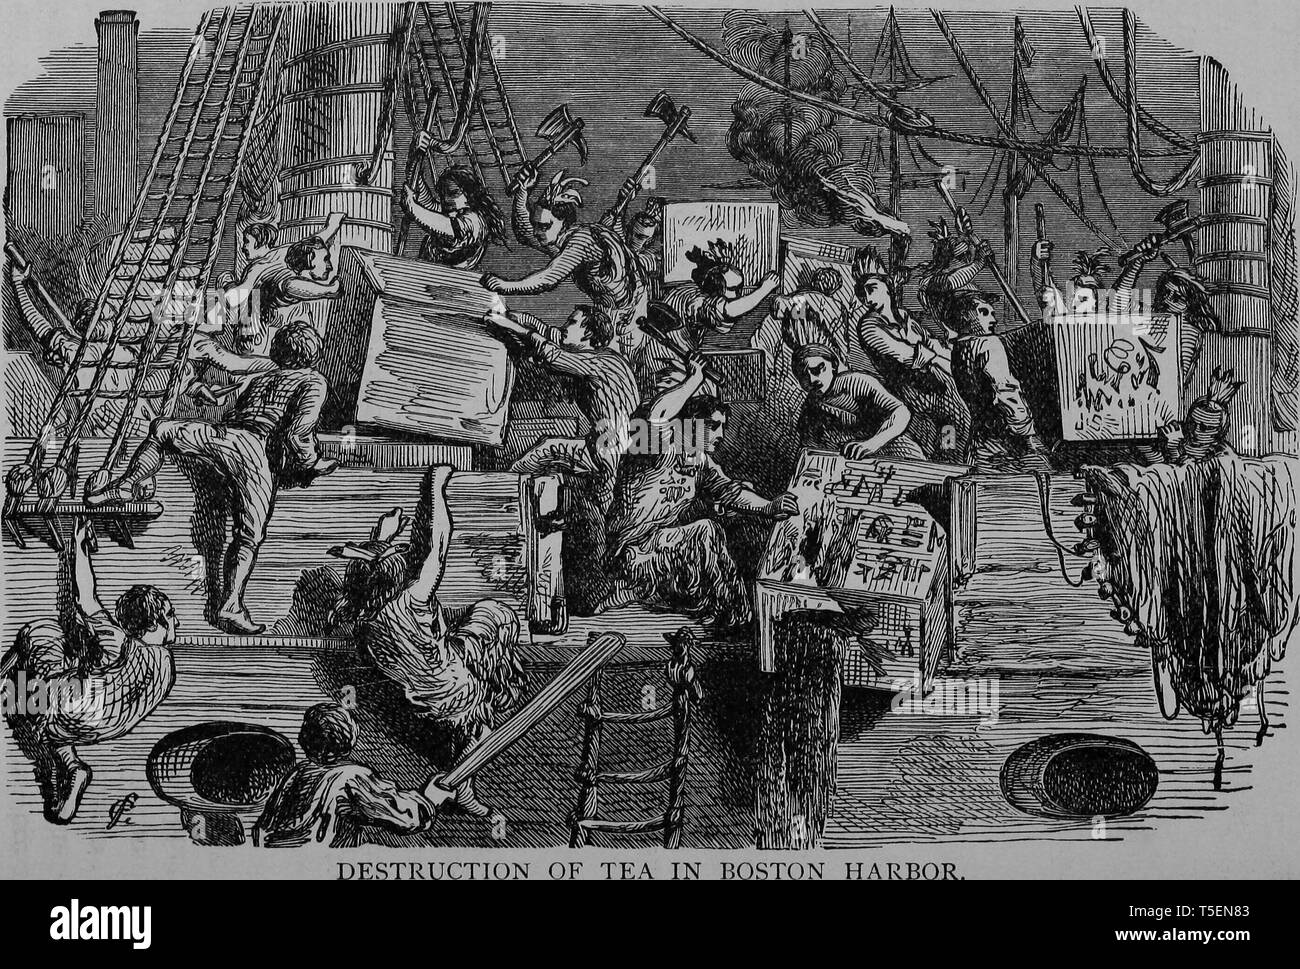 Gravur der Zerstörung einer Tee in Boston Hafen, aus dem Buch "Die politische Geschichte der USA' von James Penny Boyd, 1888. Mit freundlicher Genehmigung Internet Archive. () Stockfoto